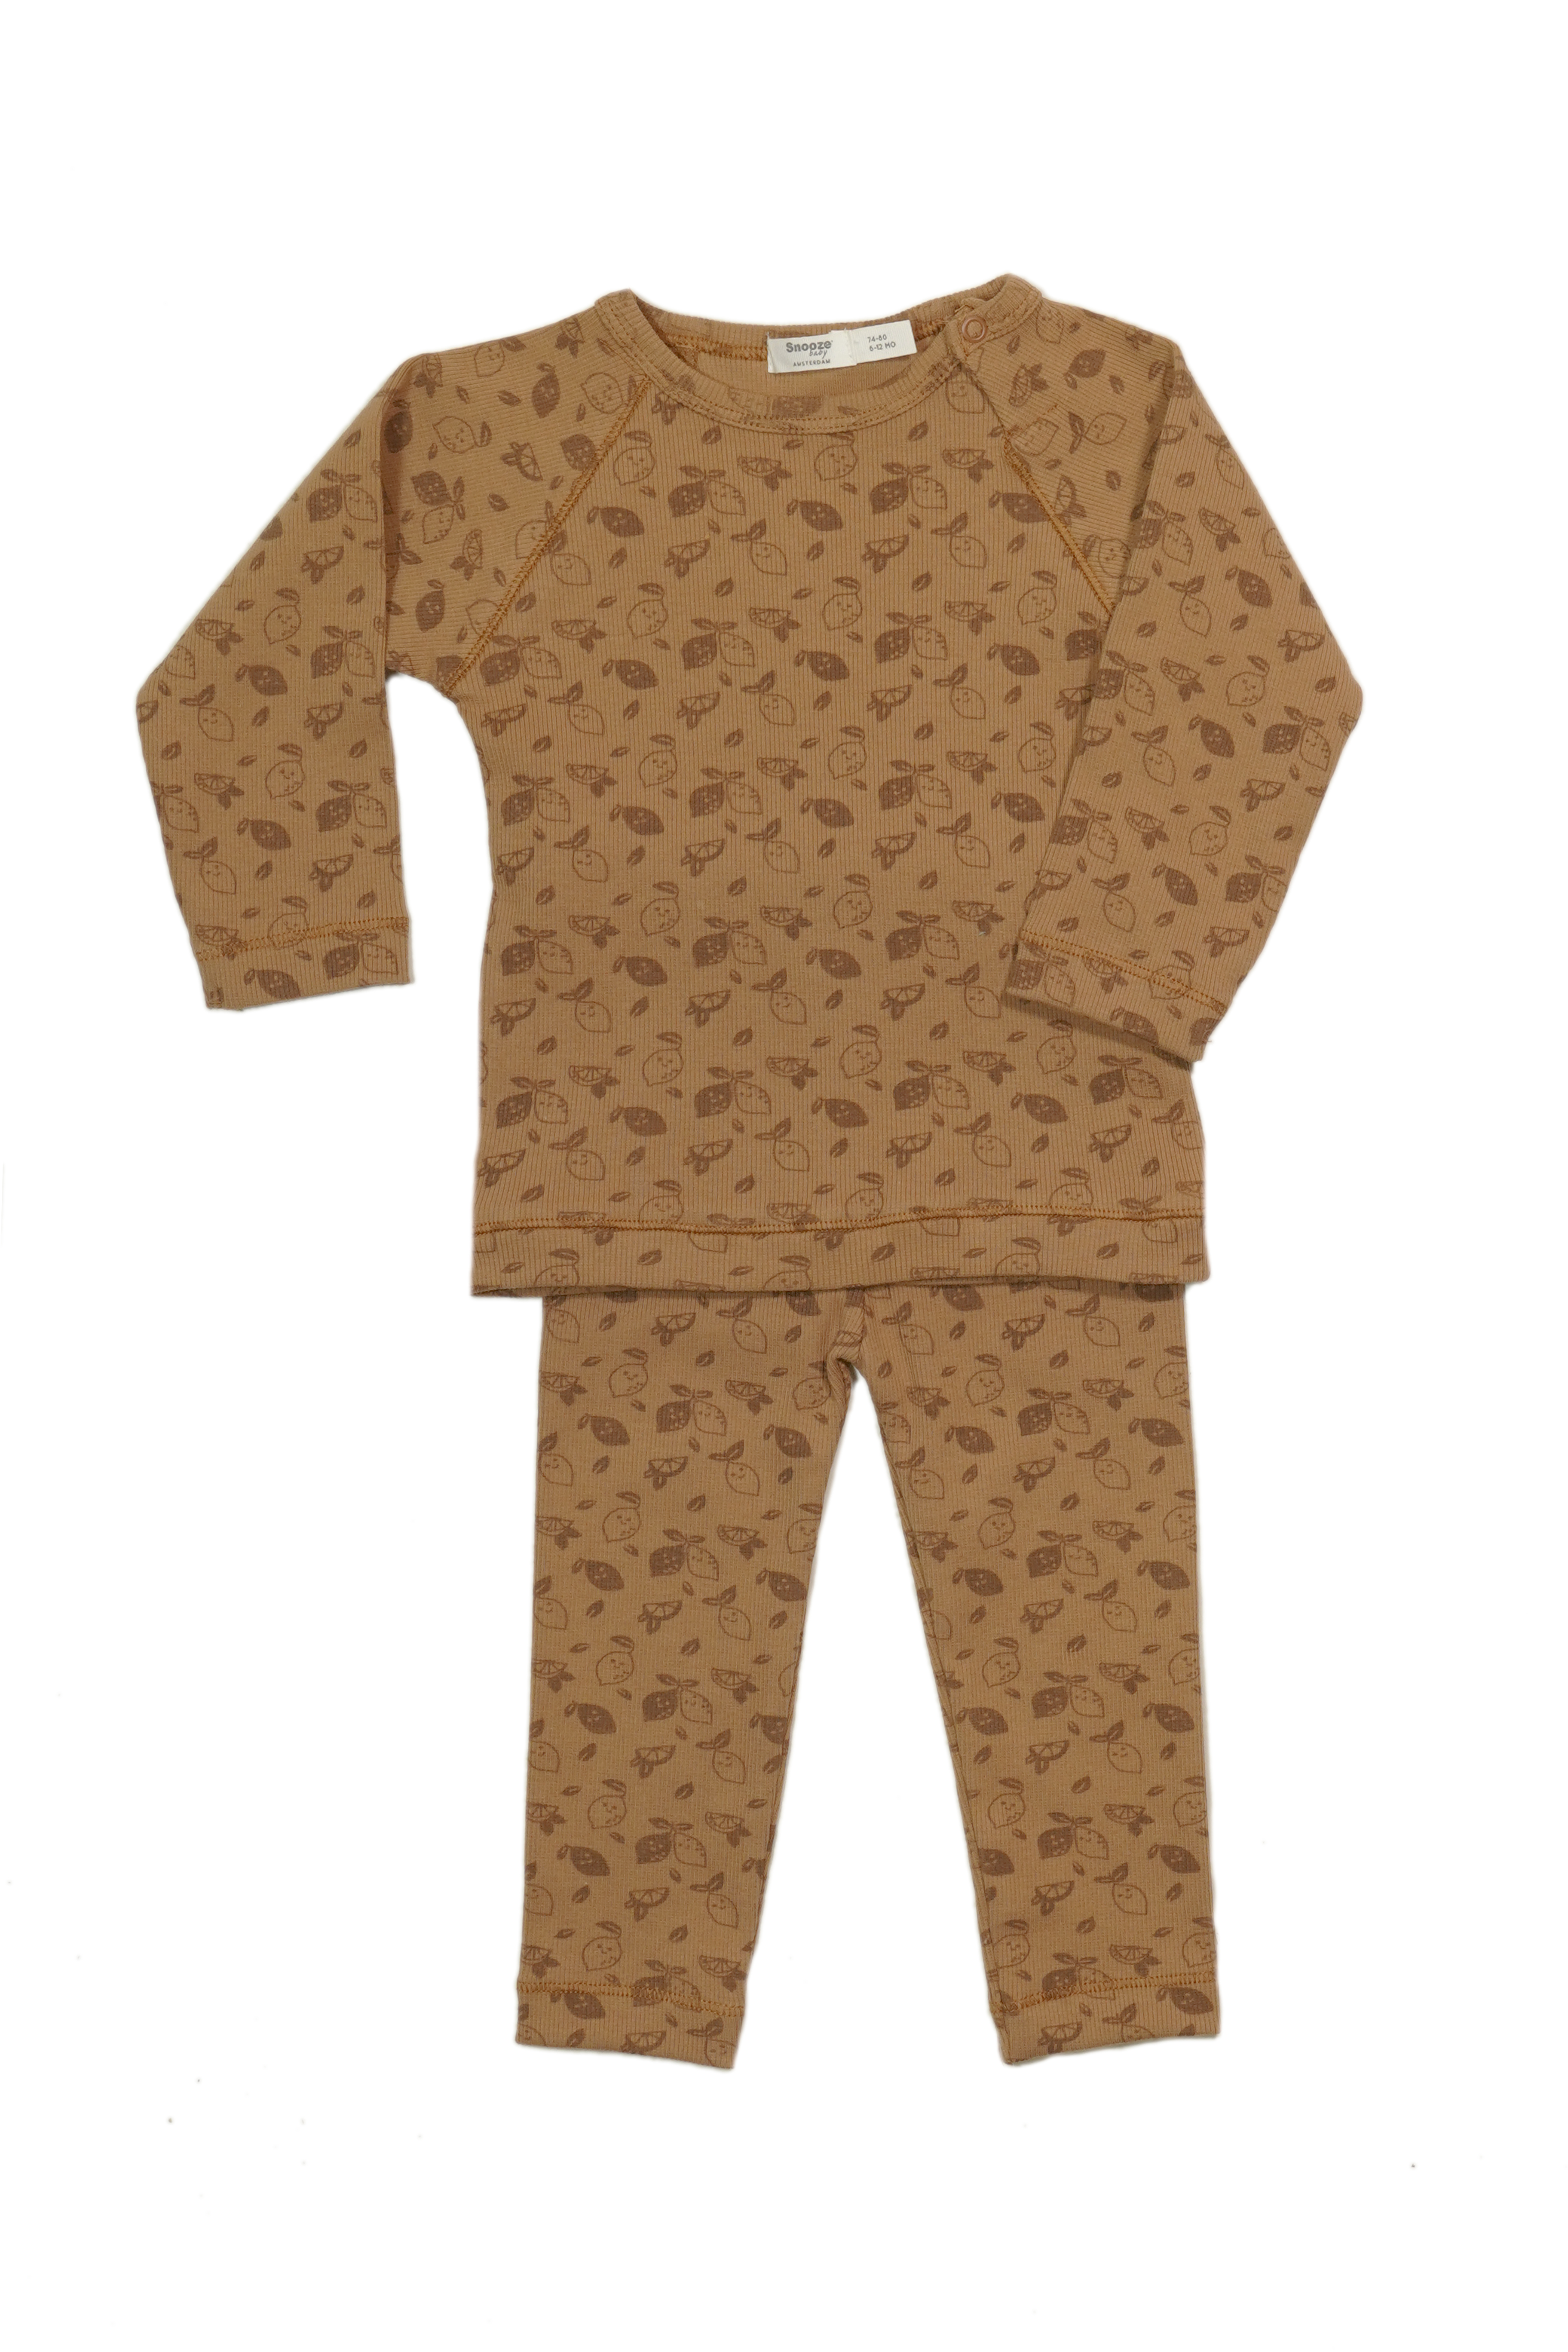 barst Thuisland Kaap Snoozebaby Organische Pyjama Toffee - maat 86/92 kopen?